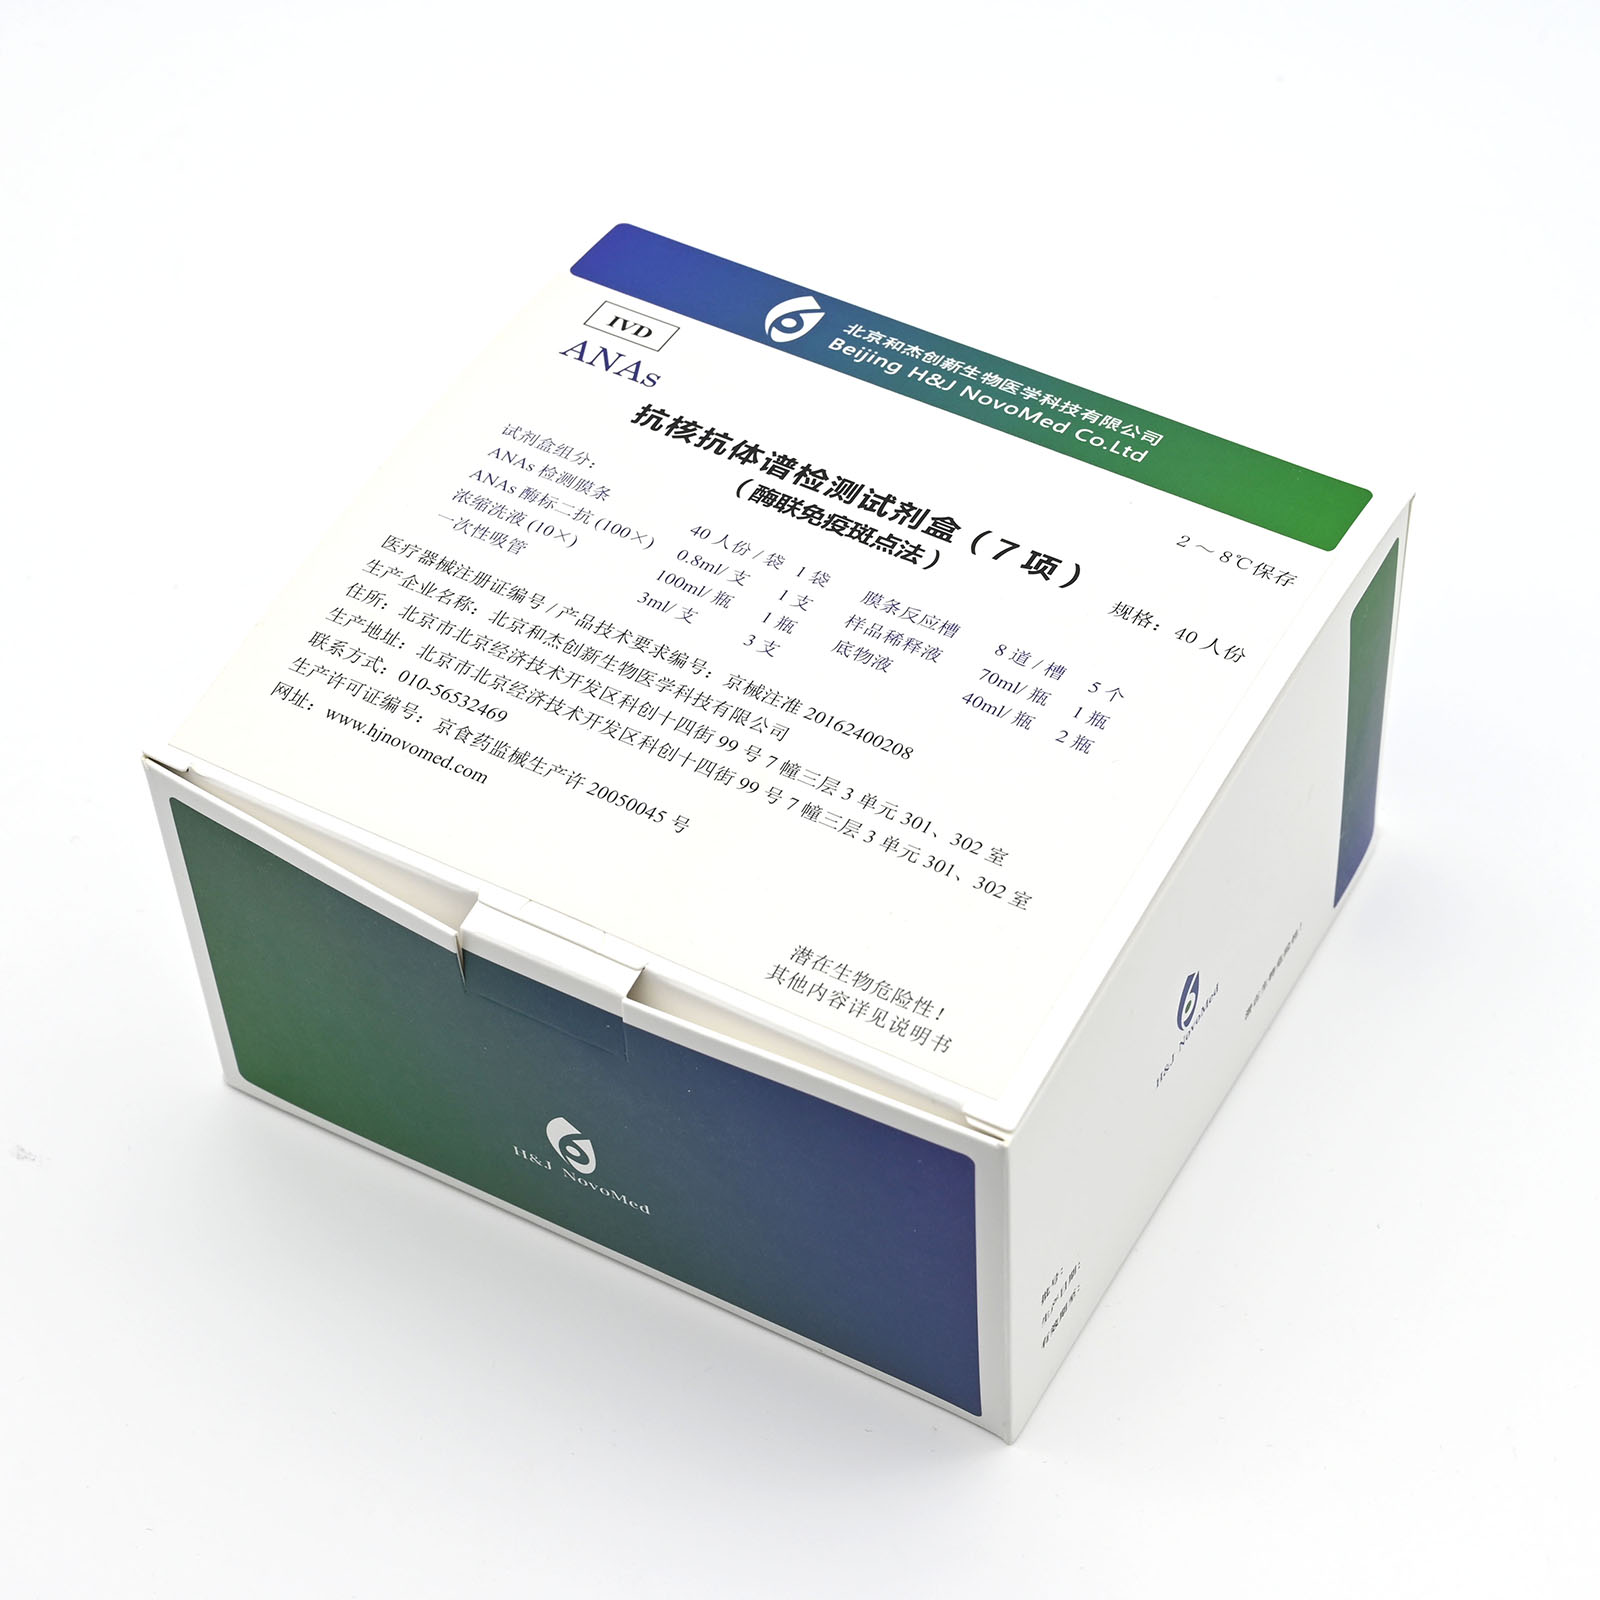 【和杰】抗核抗体谱检测试剂盒(酶联免疫斑点法)/7项